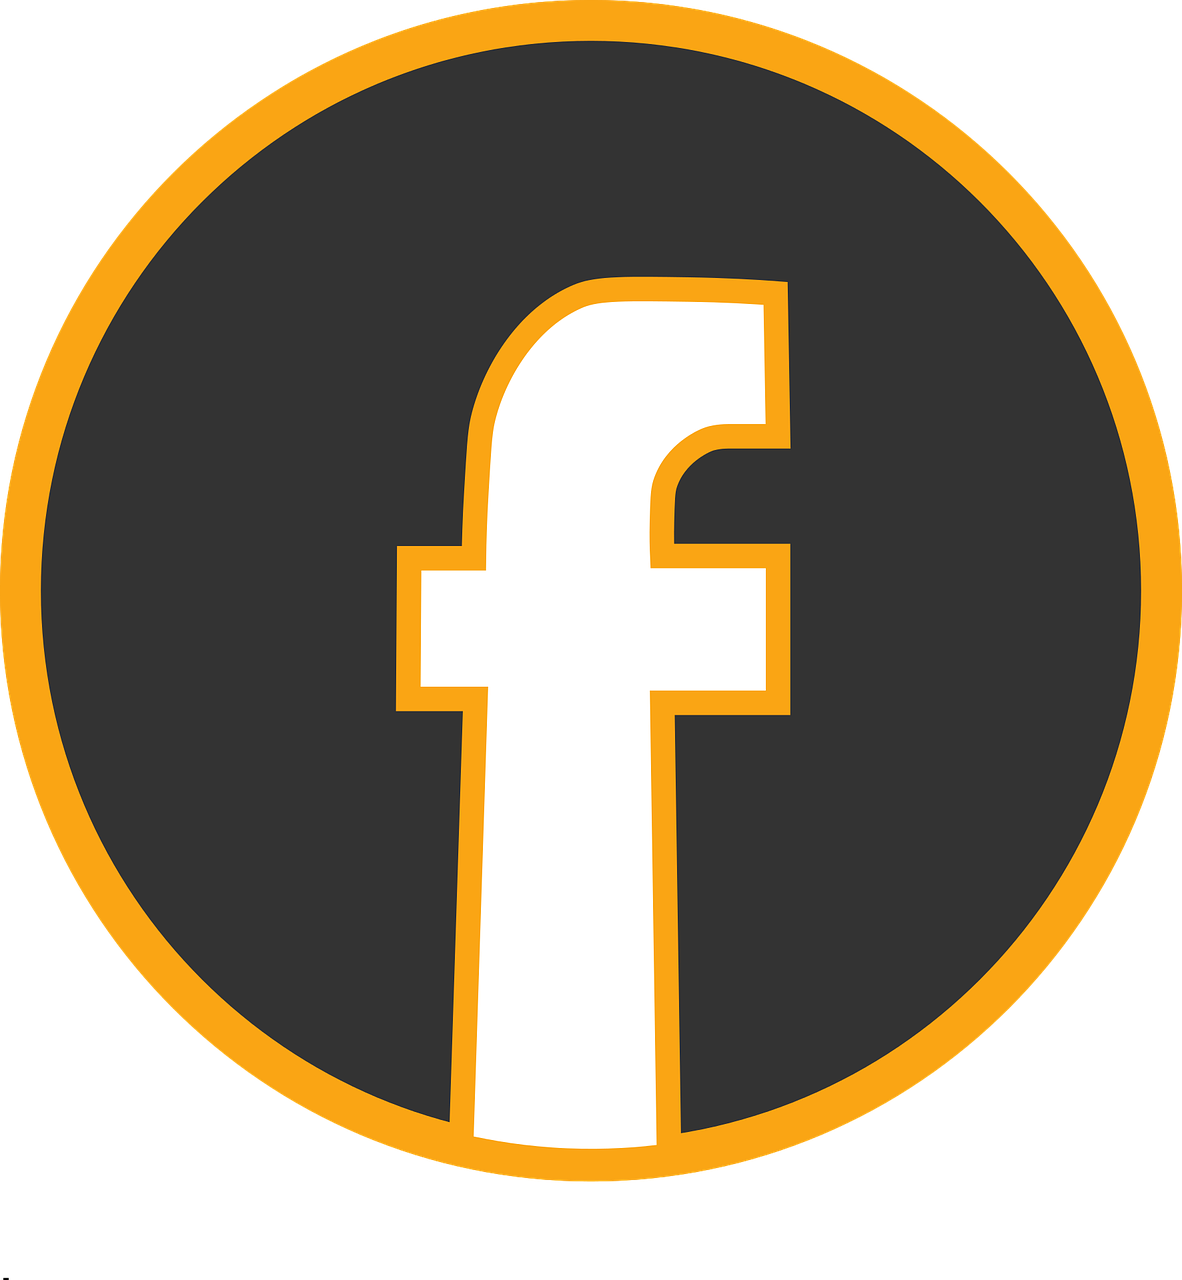 Facebook Icon Link